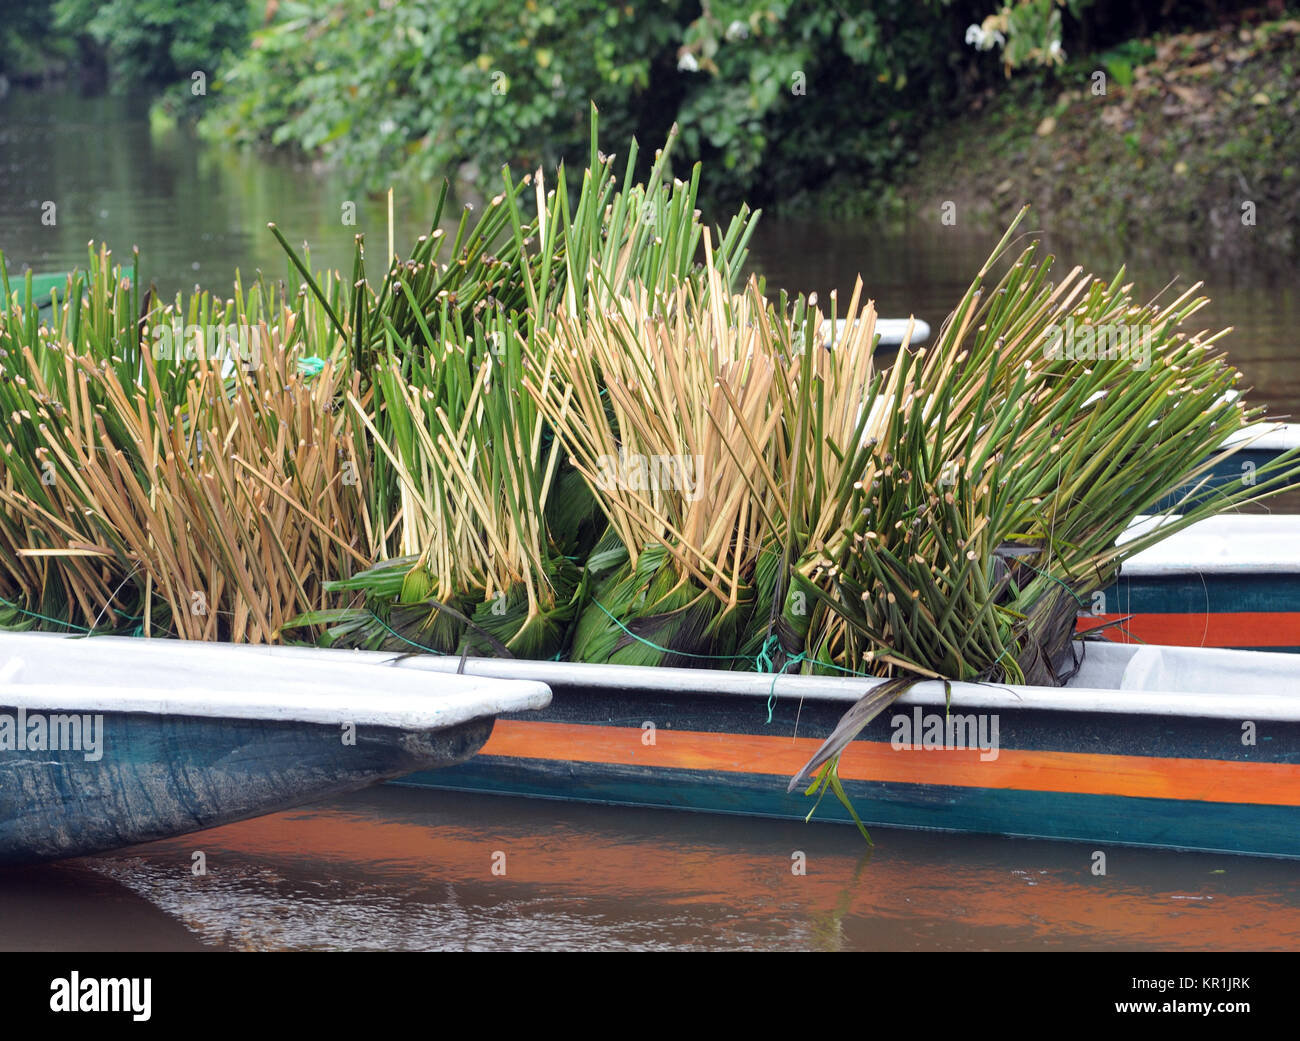 Rifilato piante di Carludovica palmata in una canoa pronta per il trasporto e il trapianto. Questi impianti sono utilizzati per la fabbricazione di cappelli di Panama. Yasu Foto Stock